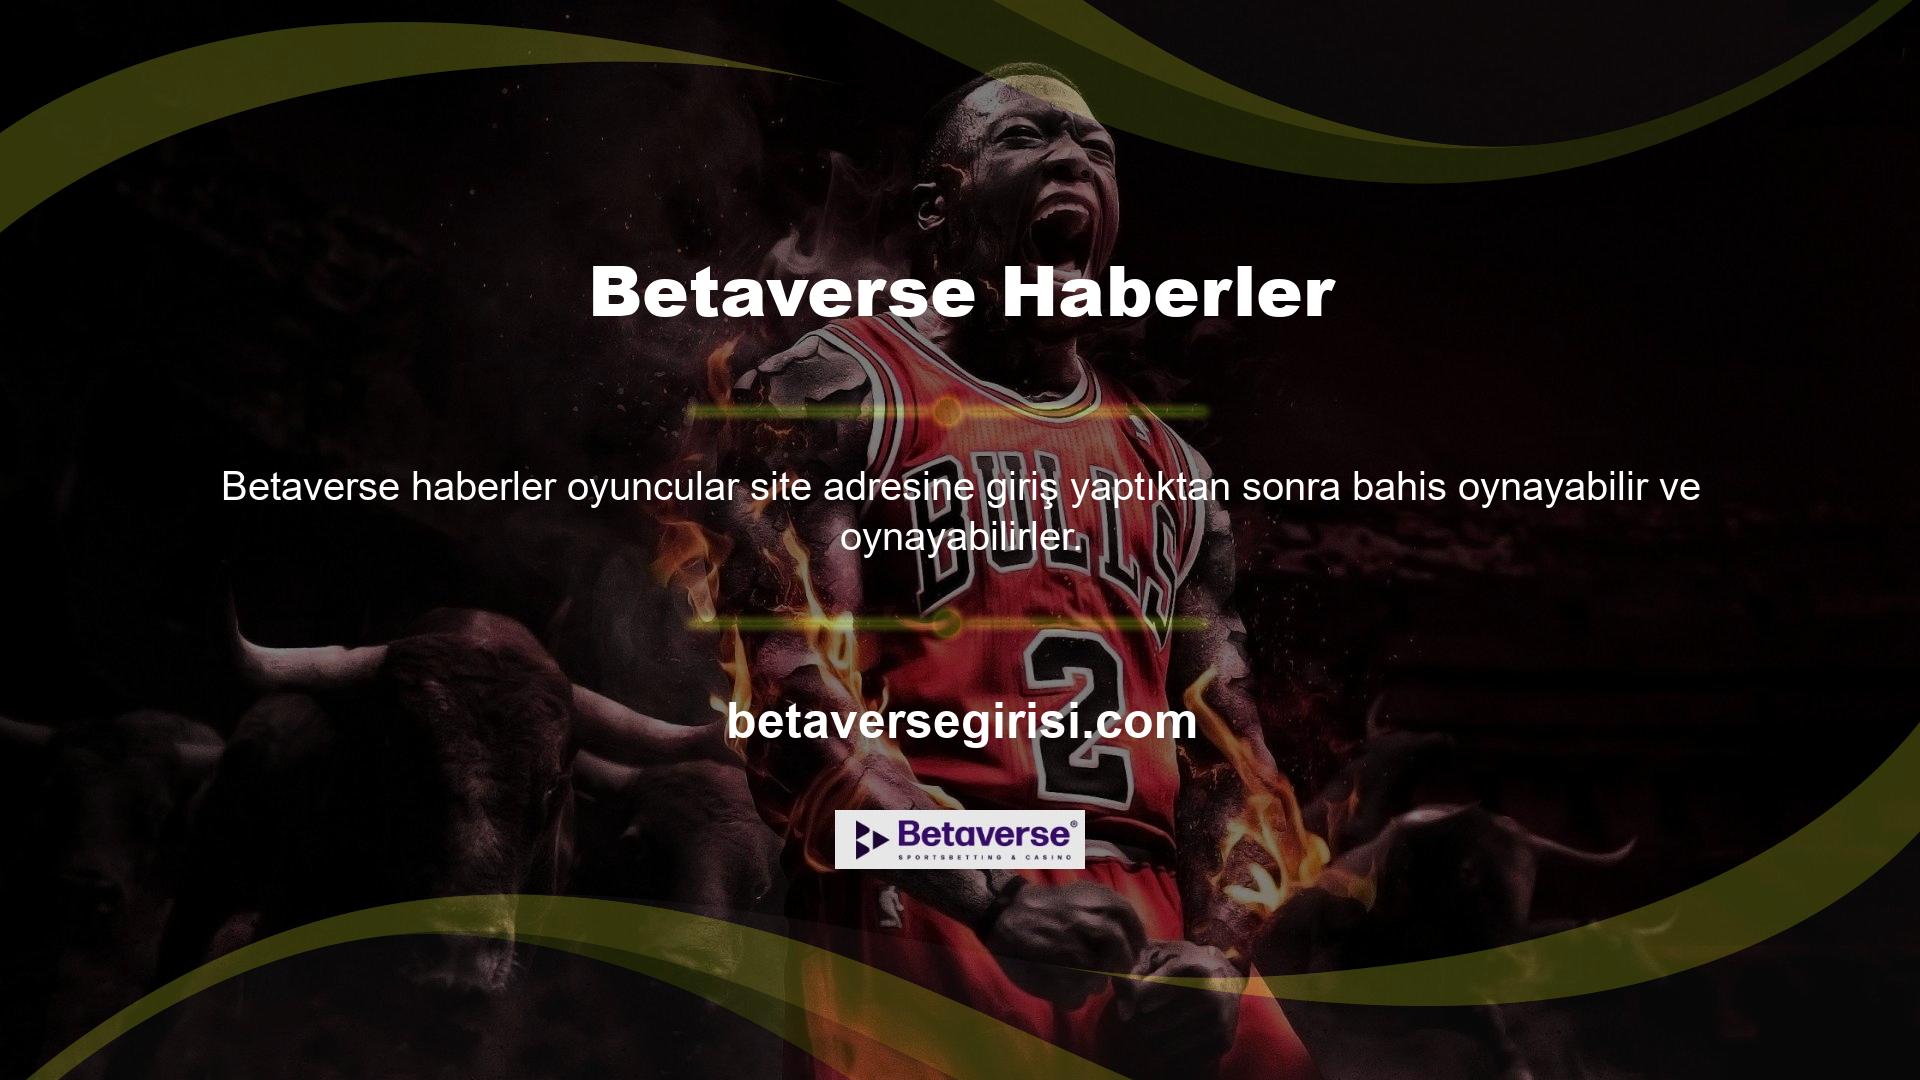 Mobil uyumlu oyun sitesi Betaverse kapatılmasının ardından haberlere mobil web tarayıcınızdan da ulaşabilirsiniz